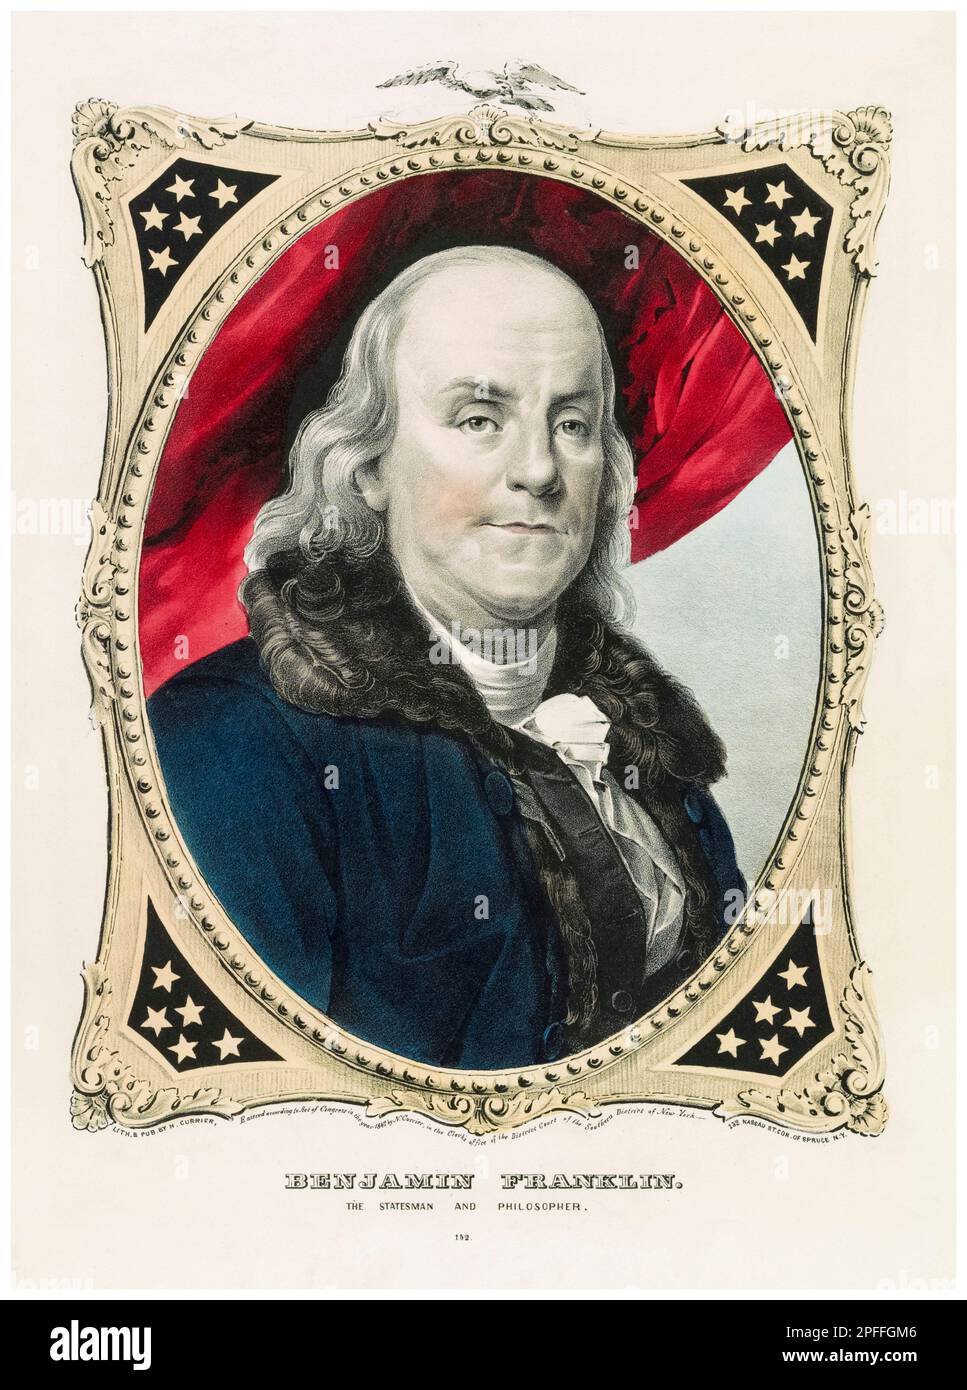 Benjamin Franklin (1706-1790), amerikanische Polymathematik, Schriftsteller, Wissenschaftler, Erfinder, Und Staatsmann. Einer der Gründerväter der Vereinigten Staaten, handfarbener Porträtdruck von Currier & Ives, 1847 Stockfoto